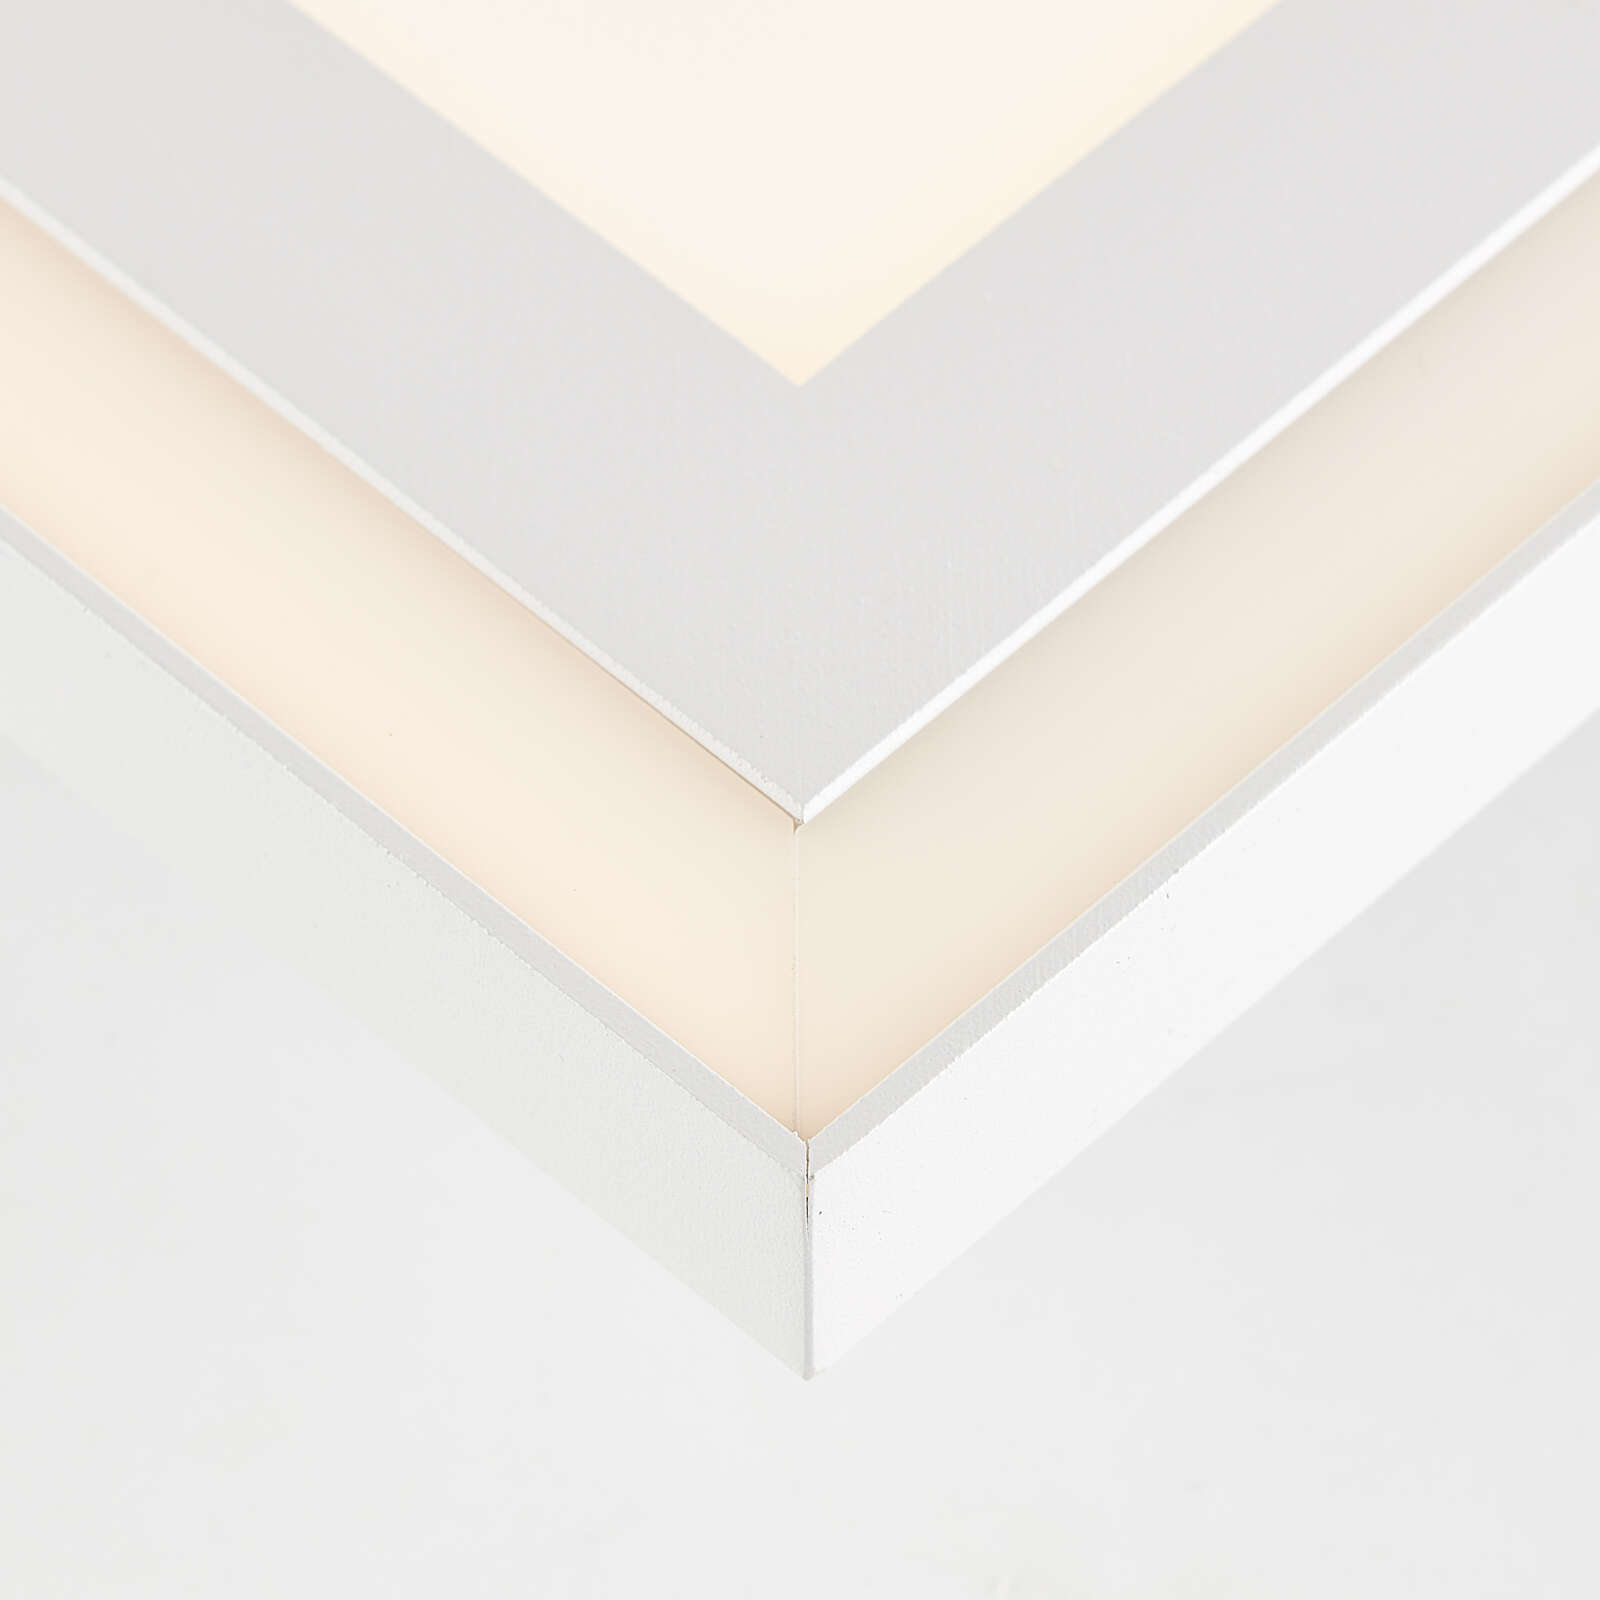             Plastic ceiling light - Kurt - White
        